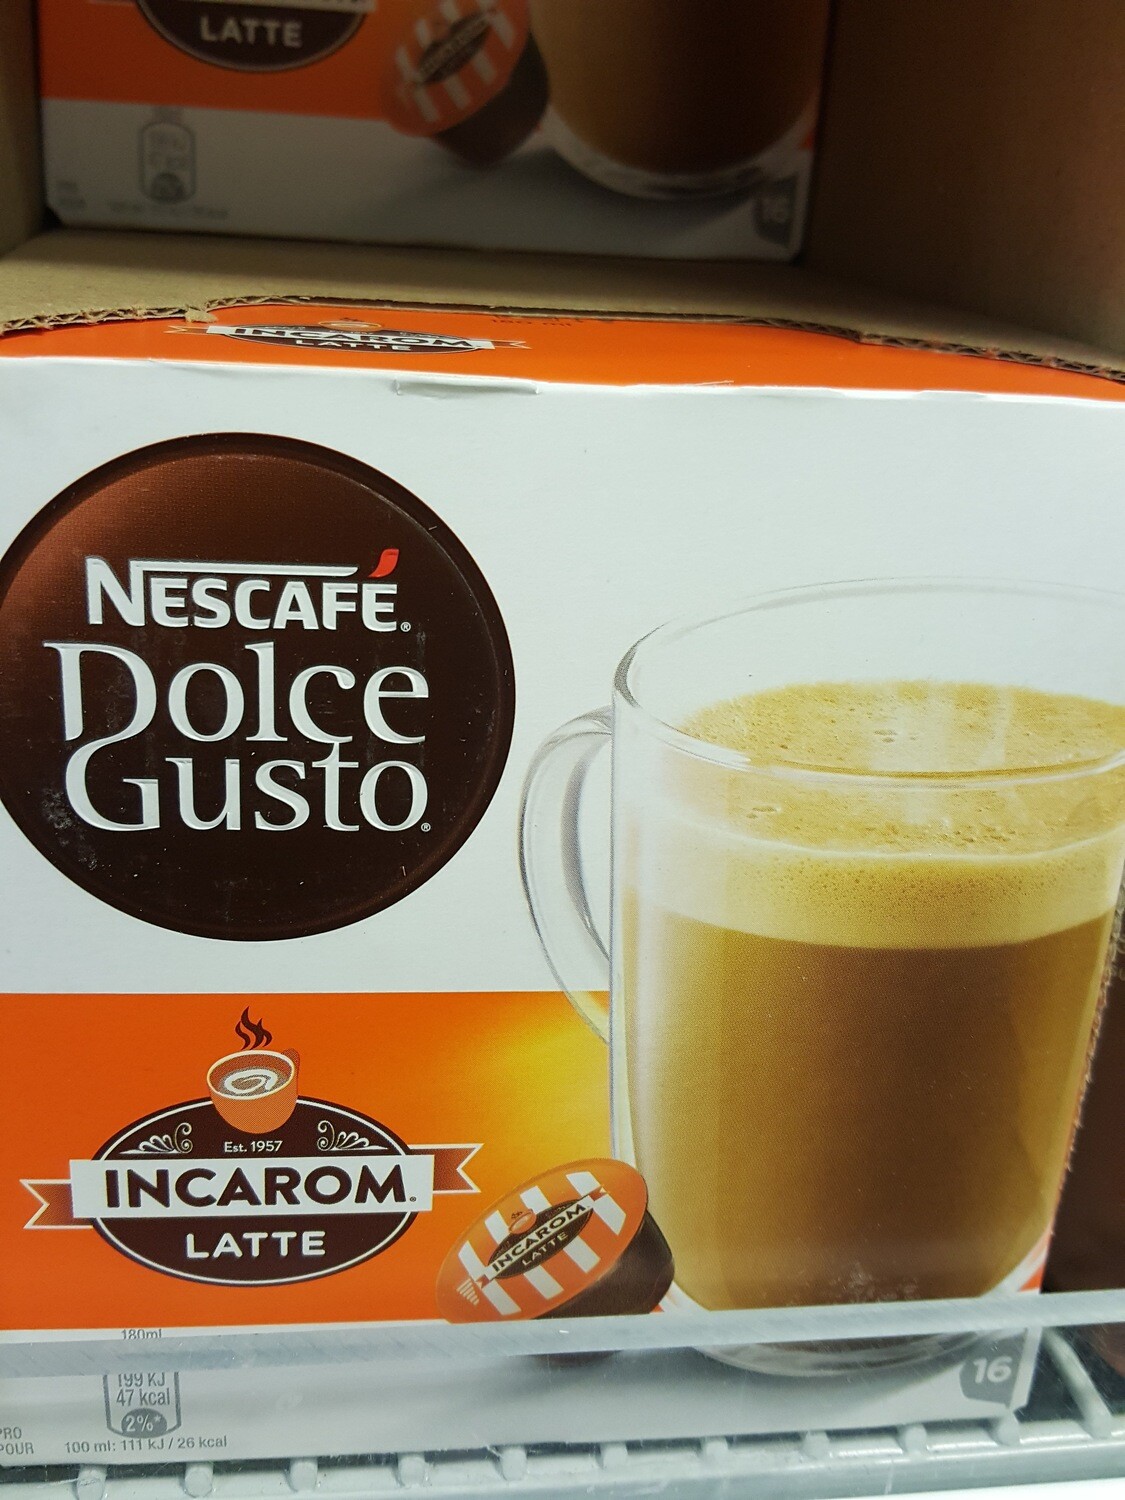 Nescafé Dolce Gusto Incarom Latte 16k.